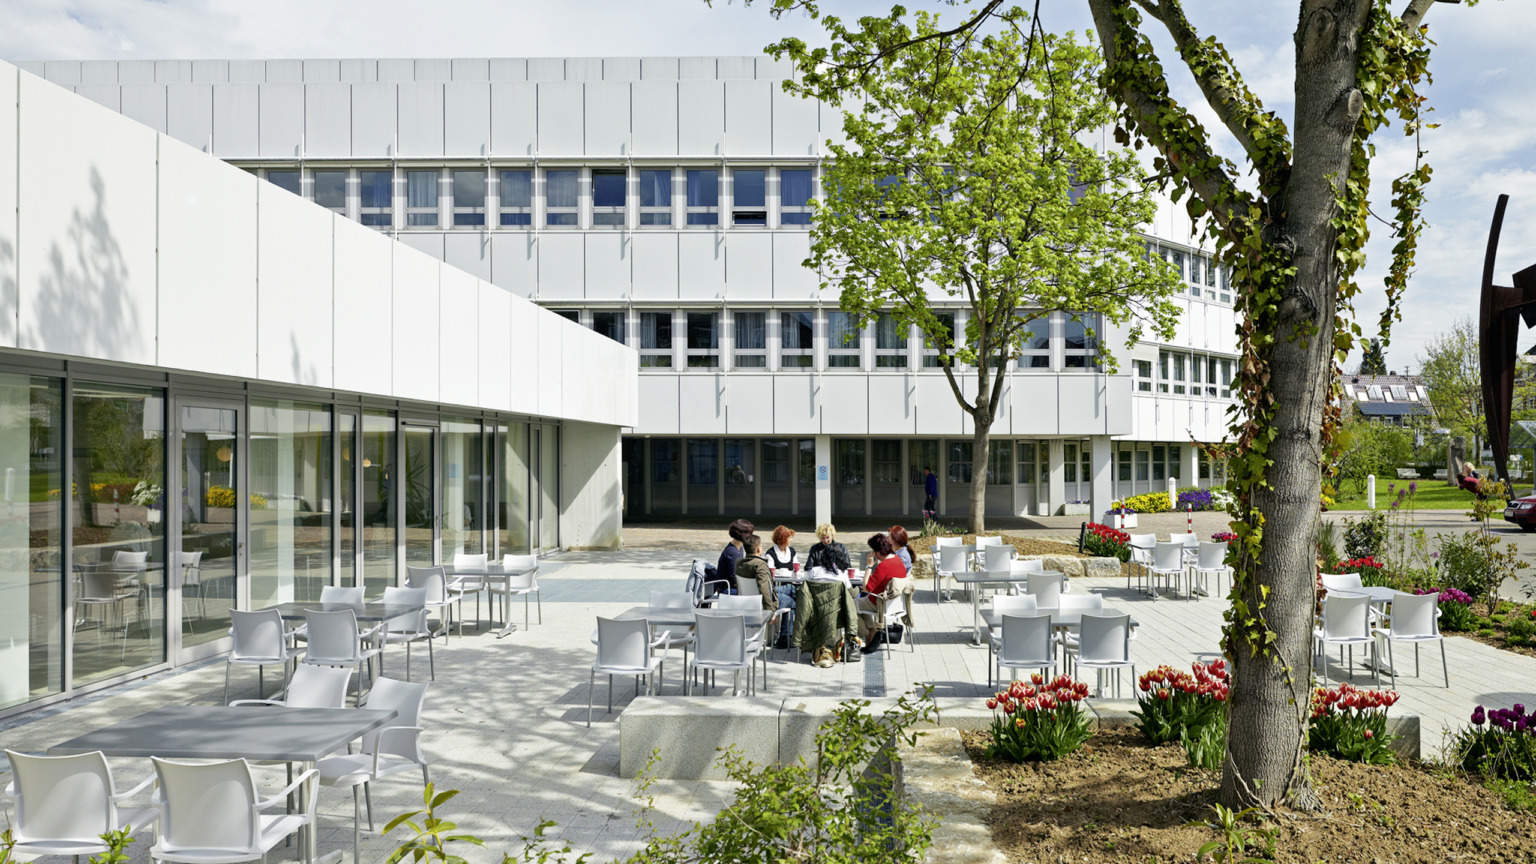 HSP Hoppe Sommer Planungs GmbH Architektur | Klinik Kirchheim Sanierung Funktionstrakt | Cafeteria Außenbereich © Bild Dietmar Strauss